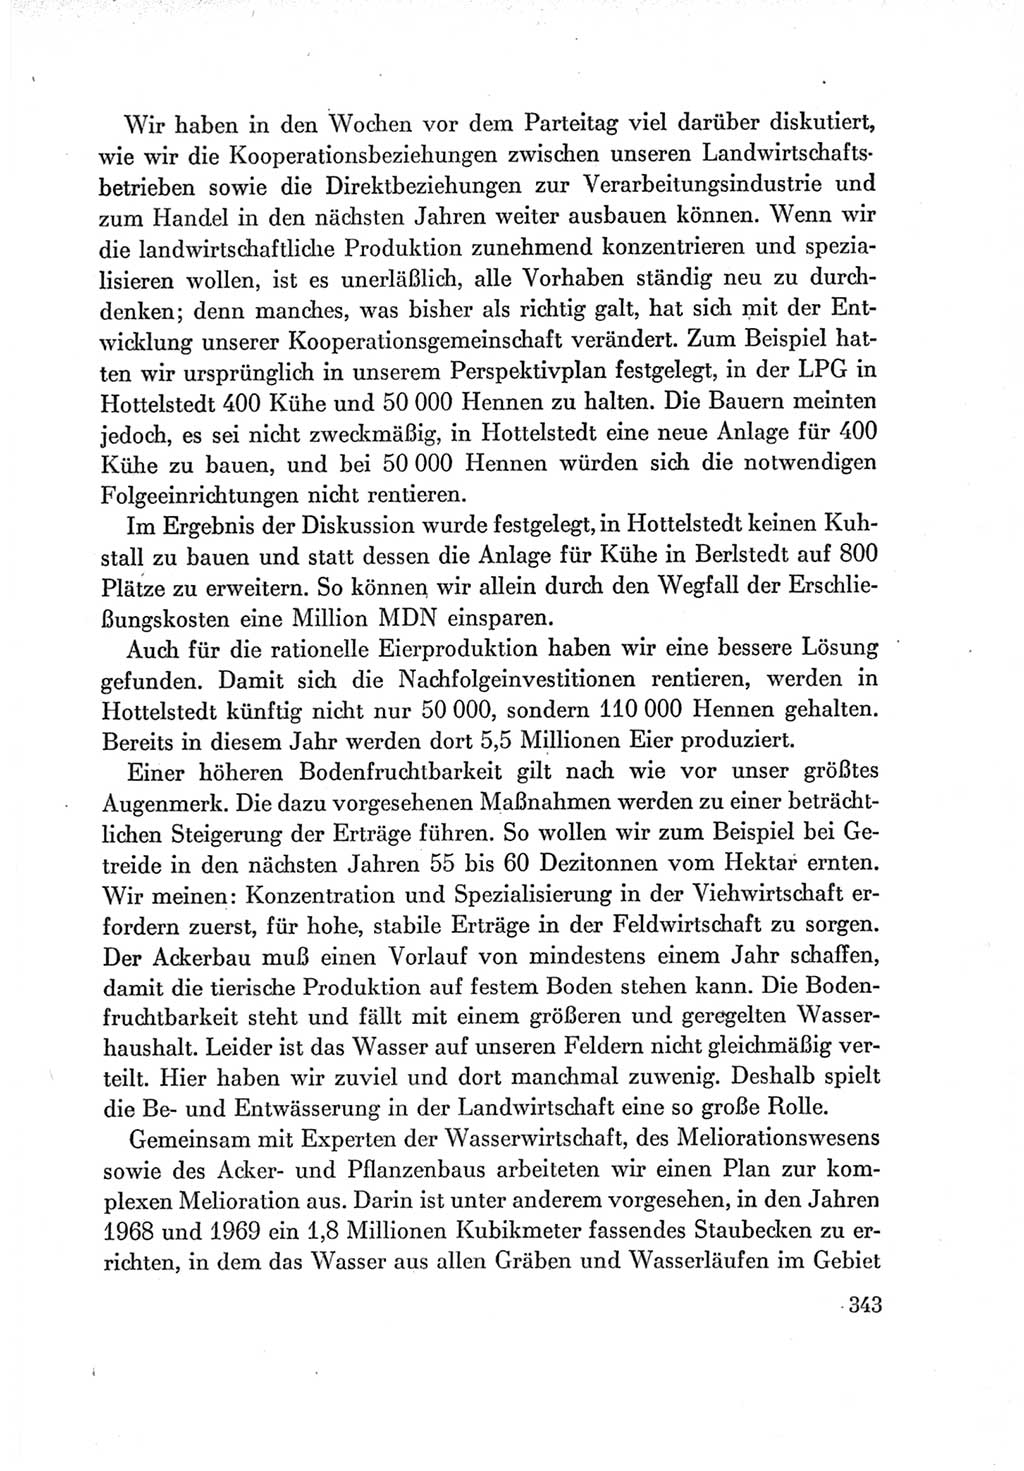 Protokoll der Verhandlungen des Ⅶ. Parteitages der Sozialistischen Einheitspartei Deutschlands (SED) [Deutsche Demokratische Republik (DDR)] 1967, Band Ⅰ, Seite 343 (Prot. Verh. Ⅶ. PT SED DDR 1967, Bd. Ⅰ, S. 343)